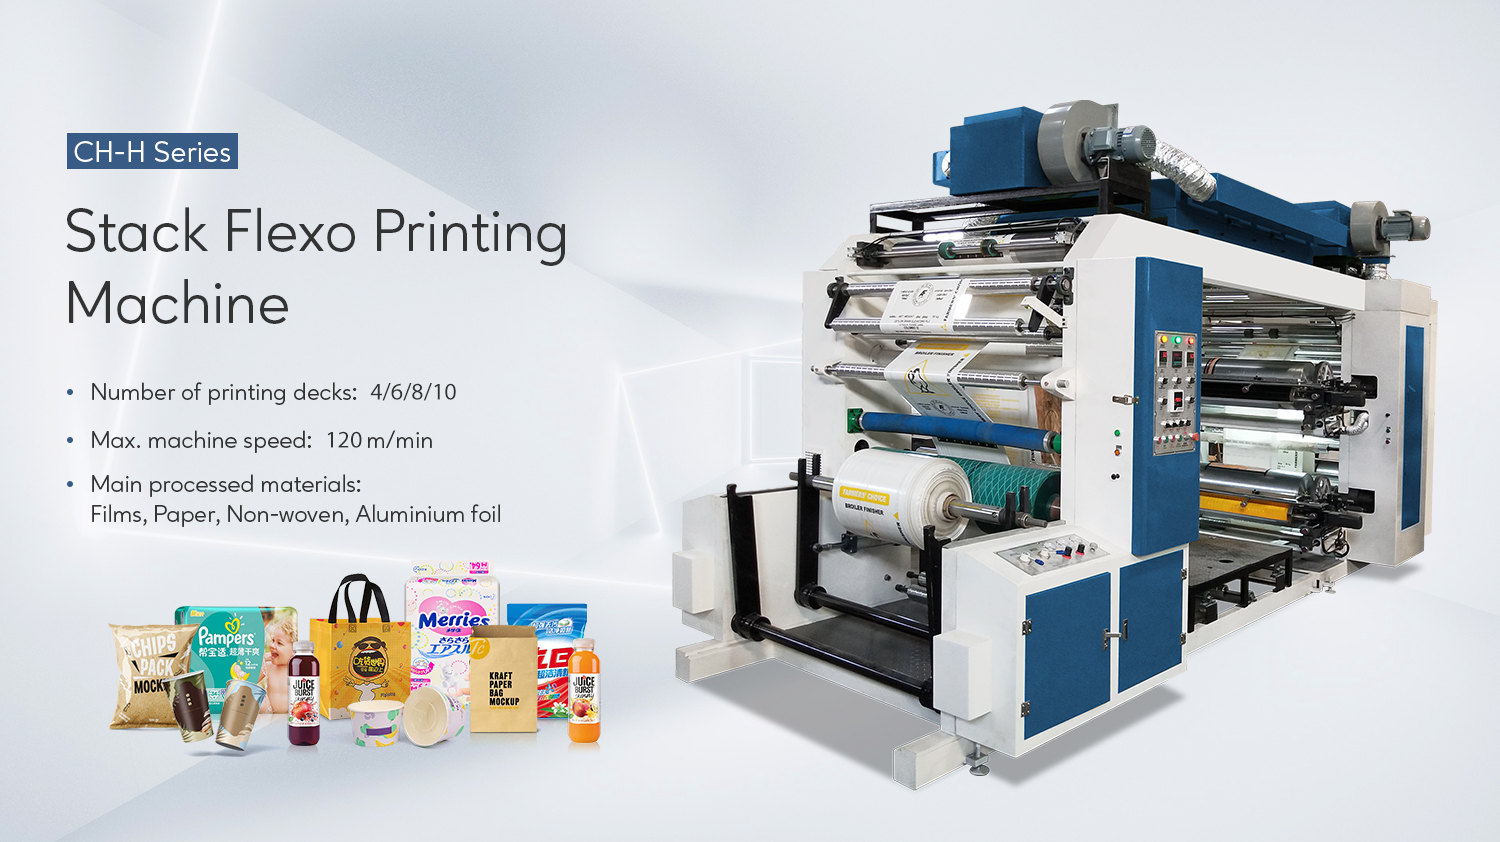 PP հյուսված տոպրակների տպագրության համար կուտակված ֆլեքսո տպագրական մեքենայի առավելությունները